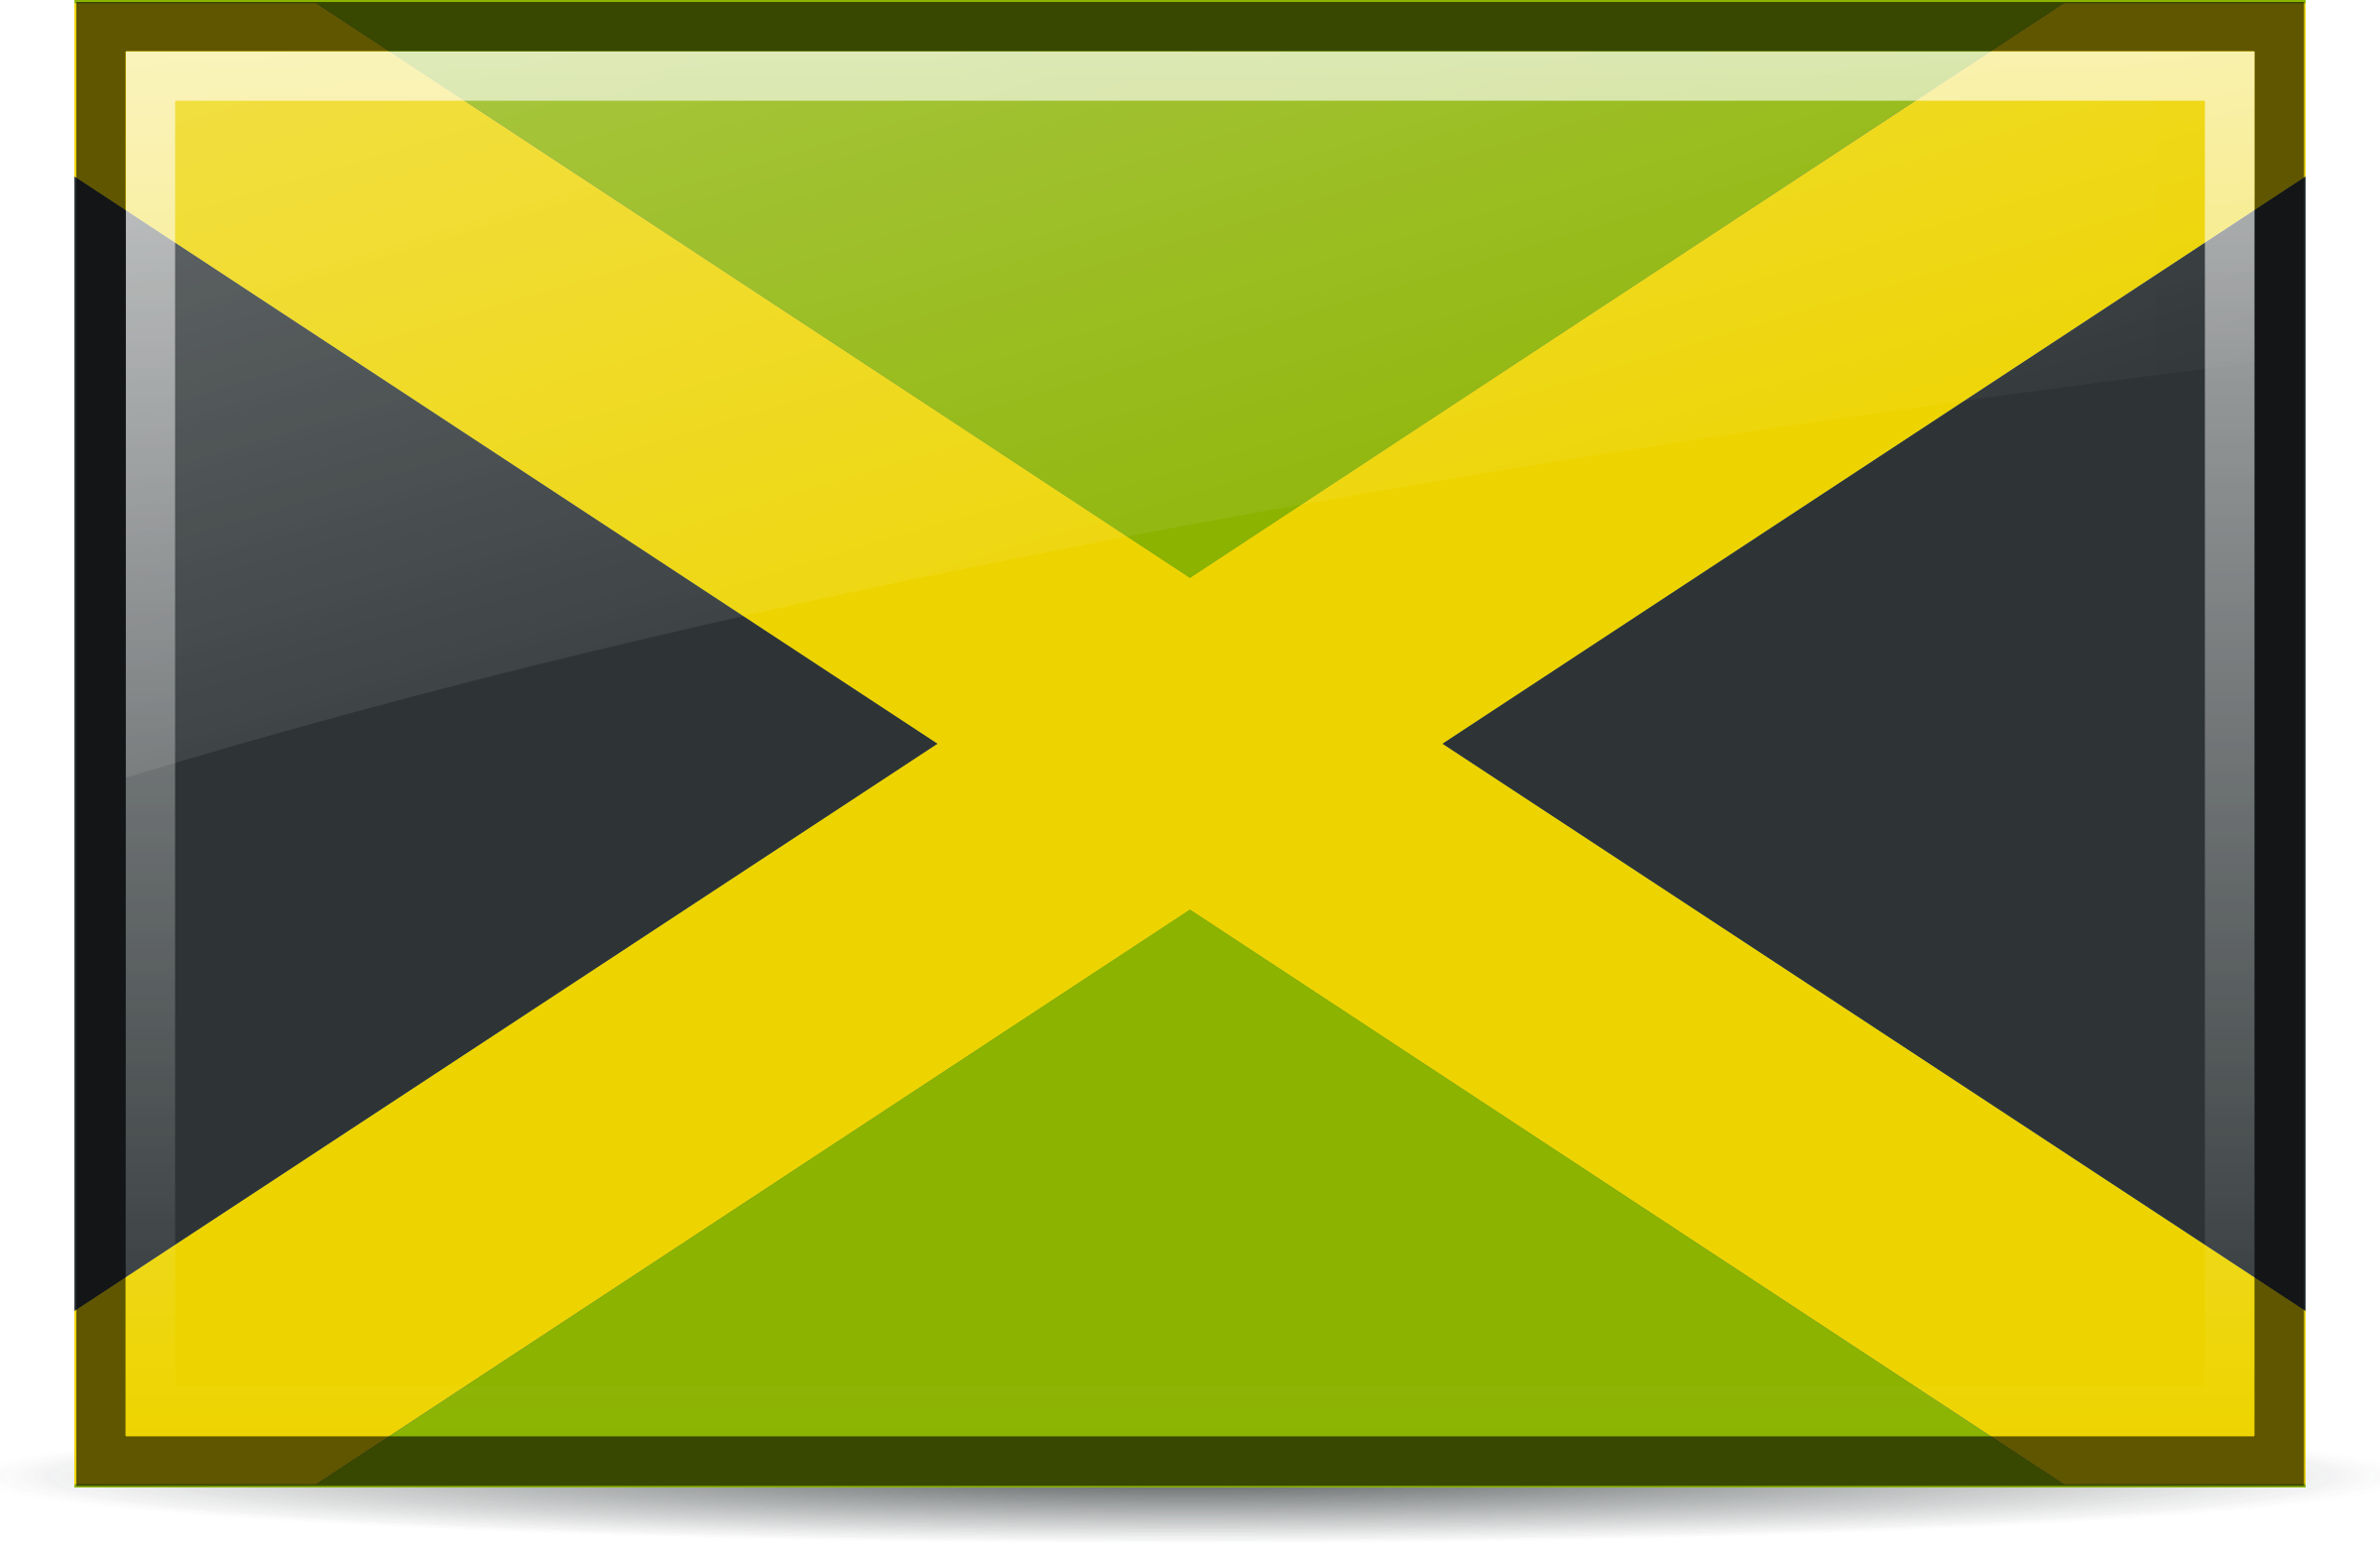 Флаг зеленый с белым крестом по диагонали фото